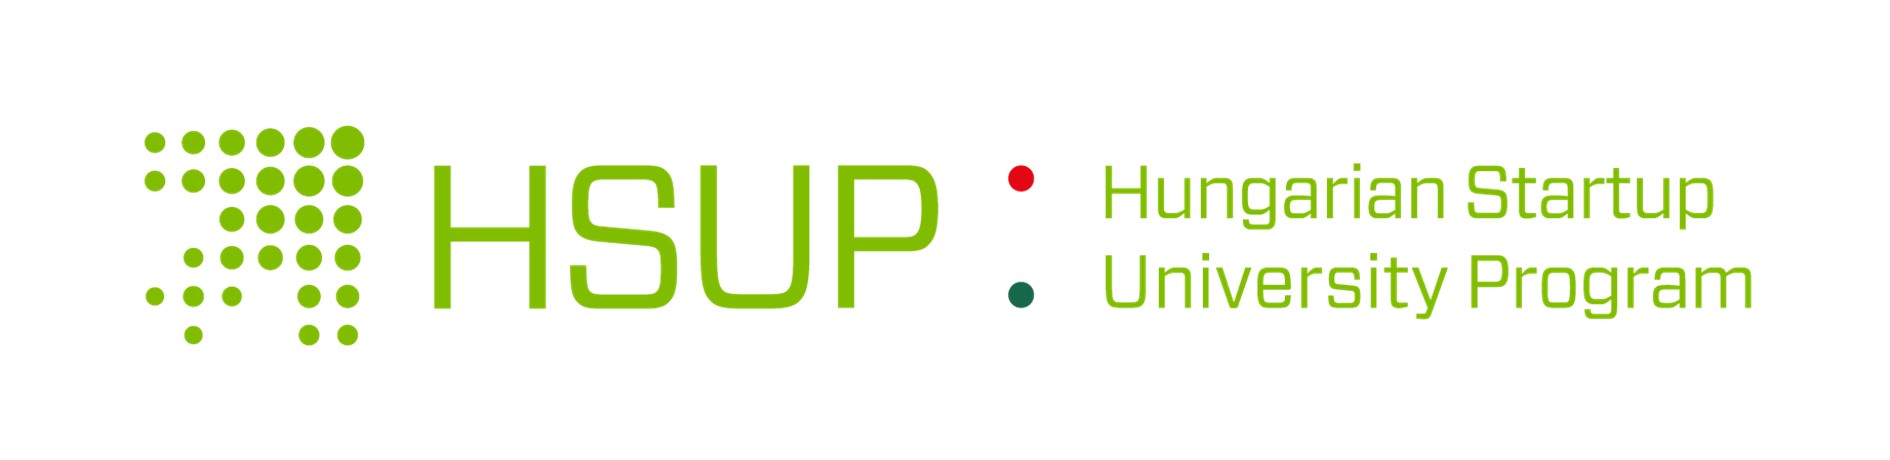 HSUP-logo